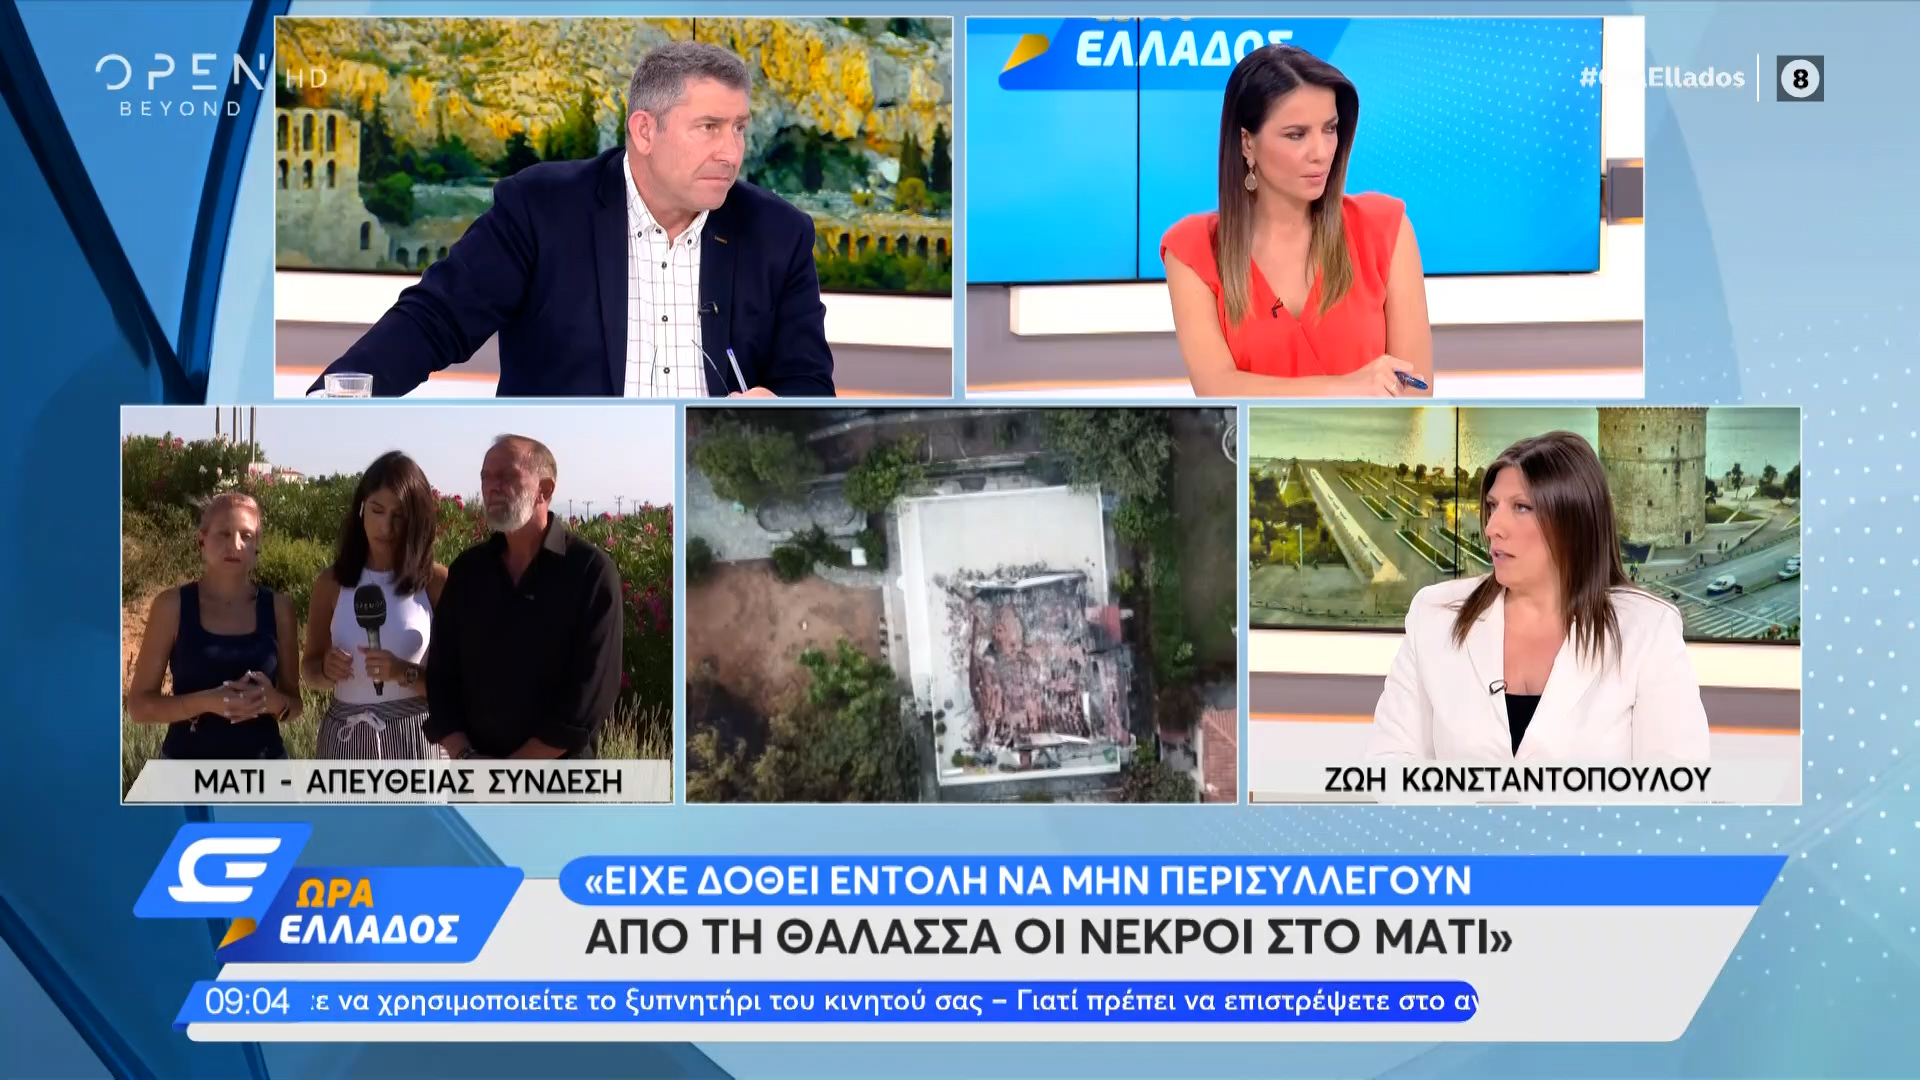 Ζωή Κωνσταντοπούλου: Είχε δοθεί εντολή να μην περισυλλεγούν από τη θάλασσα  οι νεκροί στο Μάτι | OPEN TV